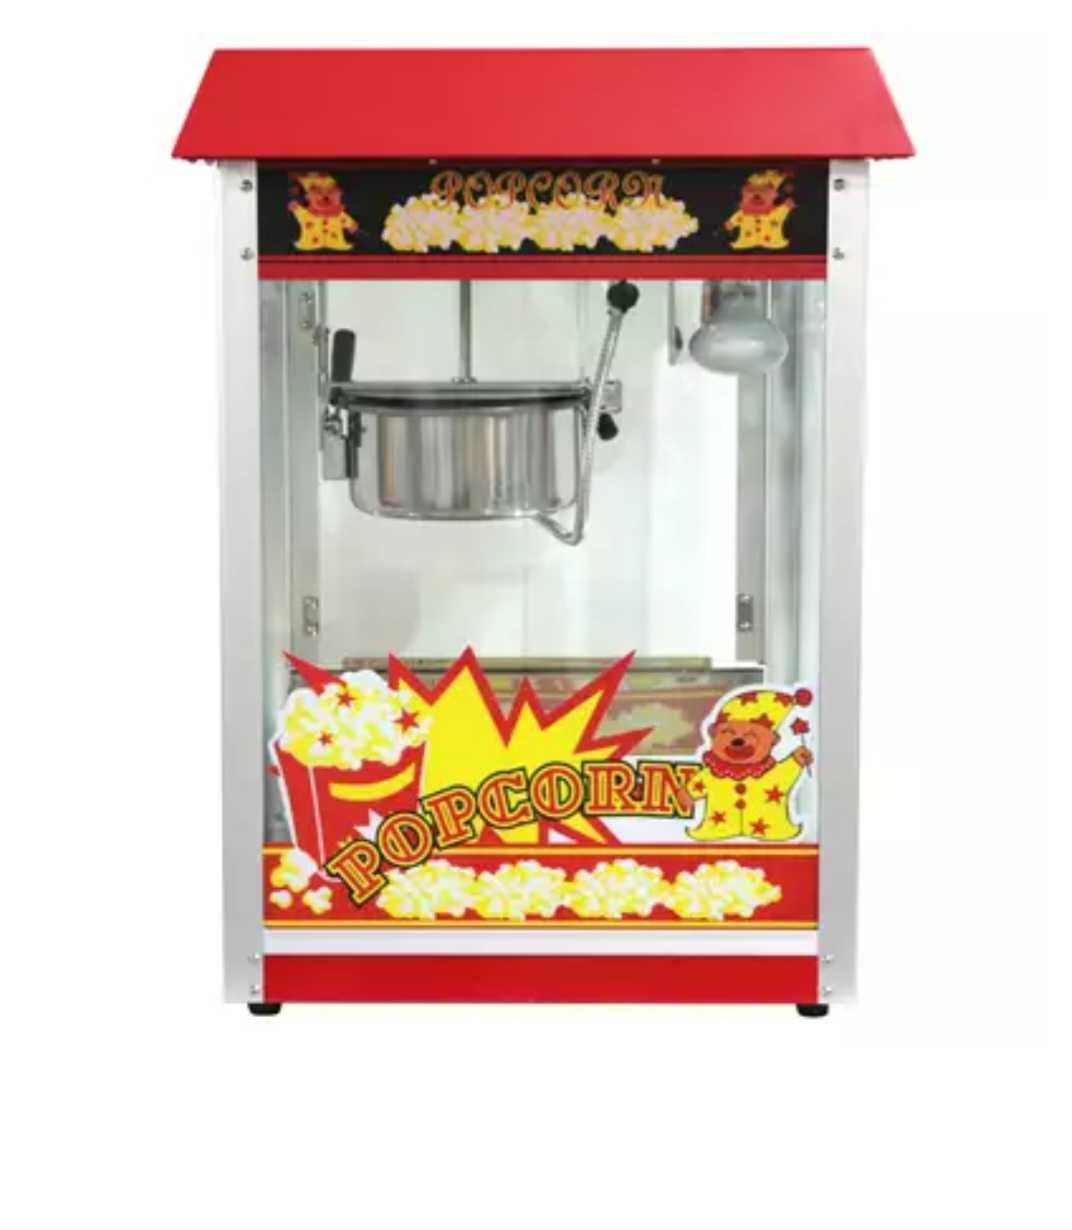 Wynajmę maszynę do waty cukrowej i popcornu